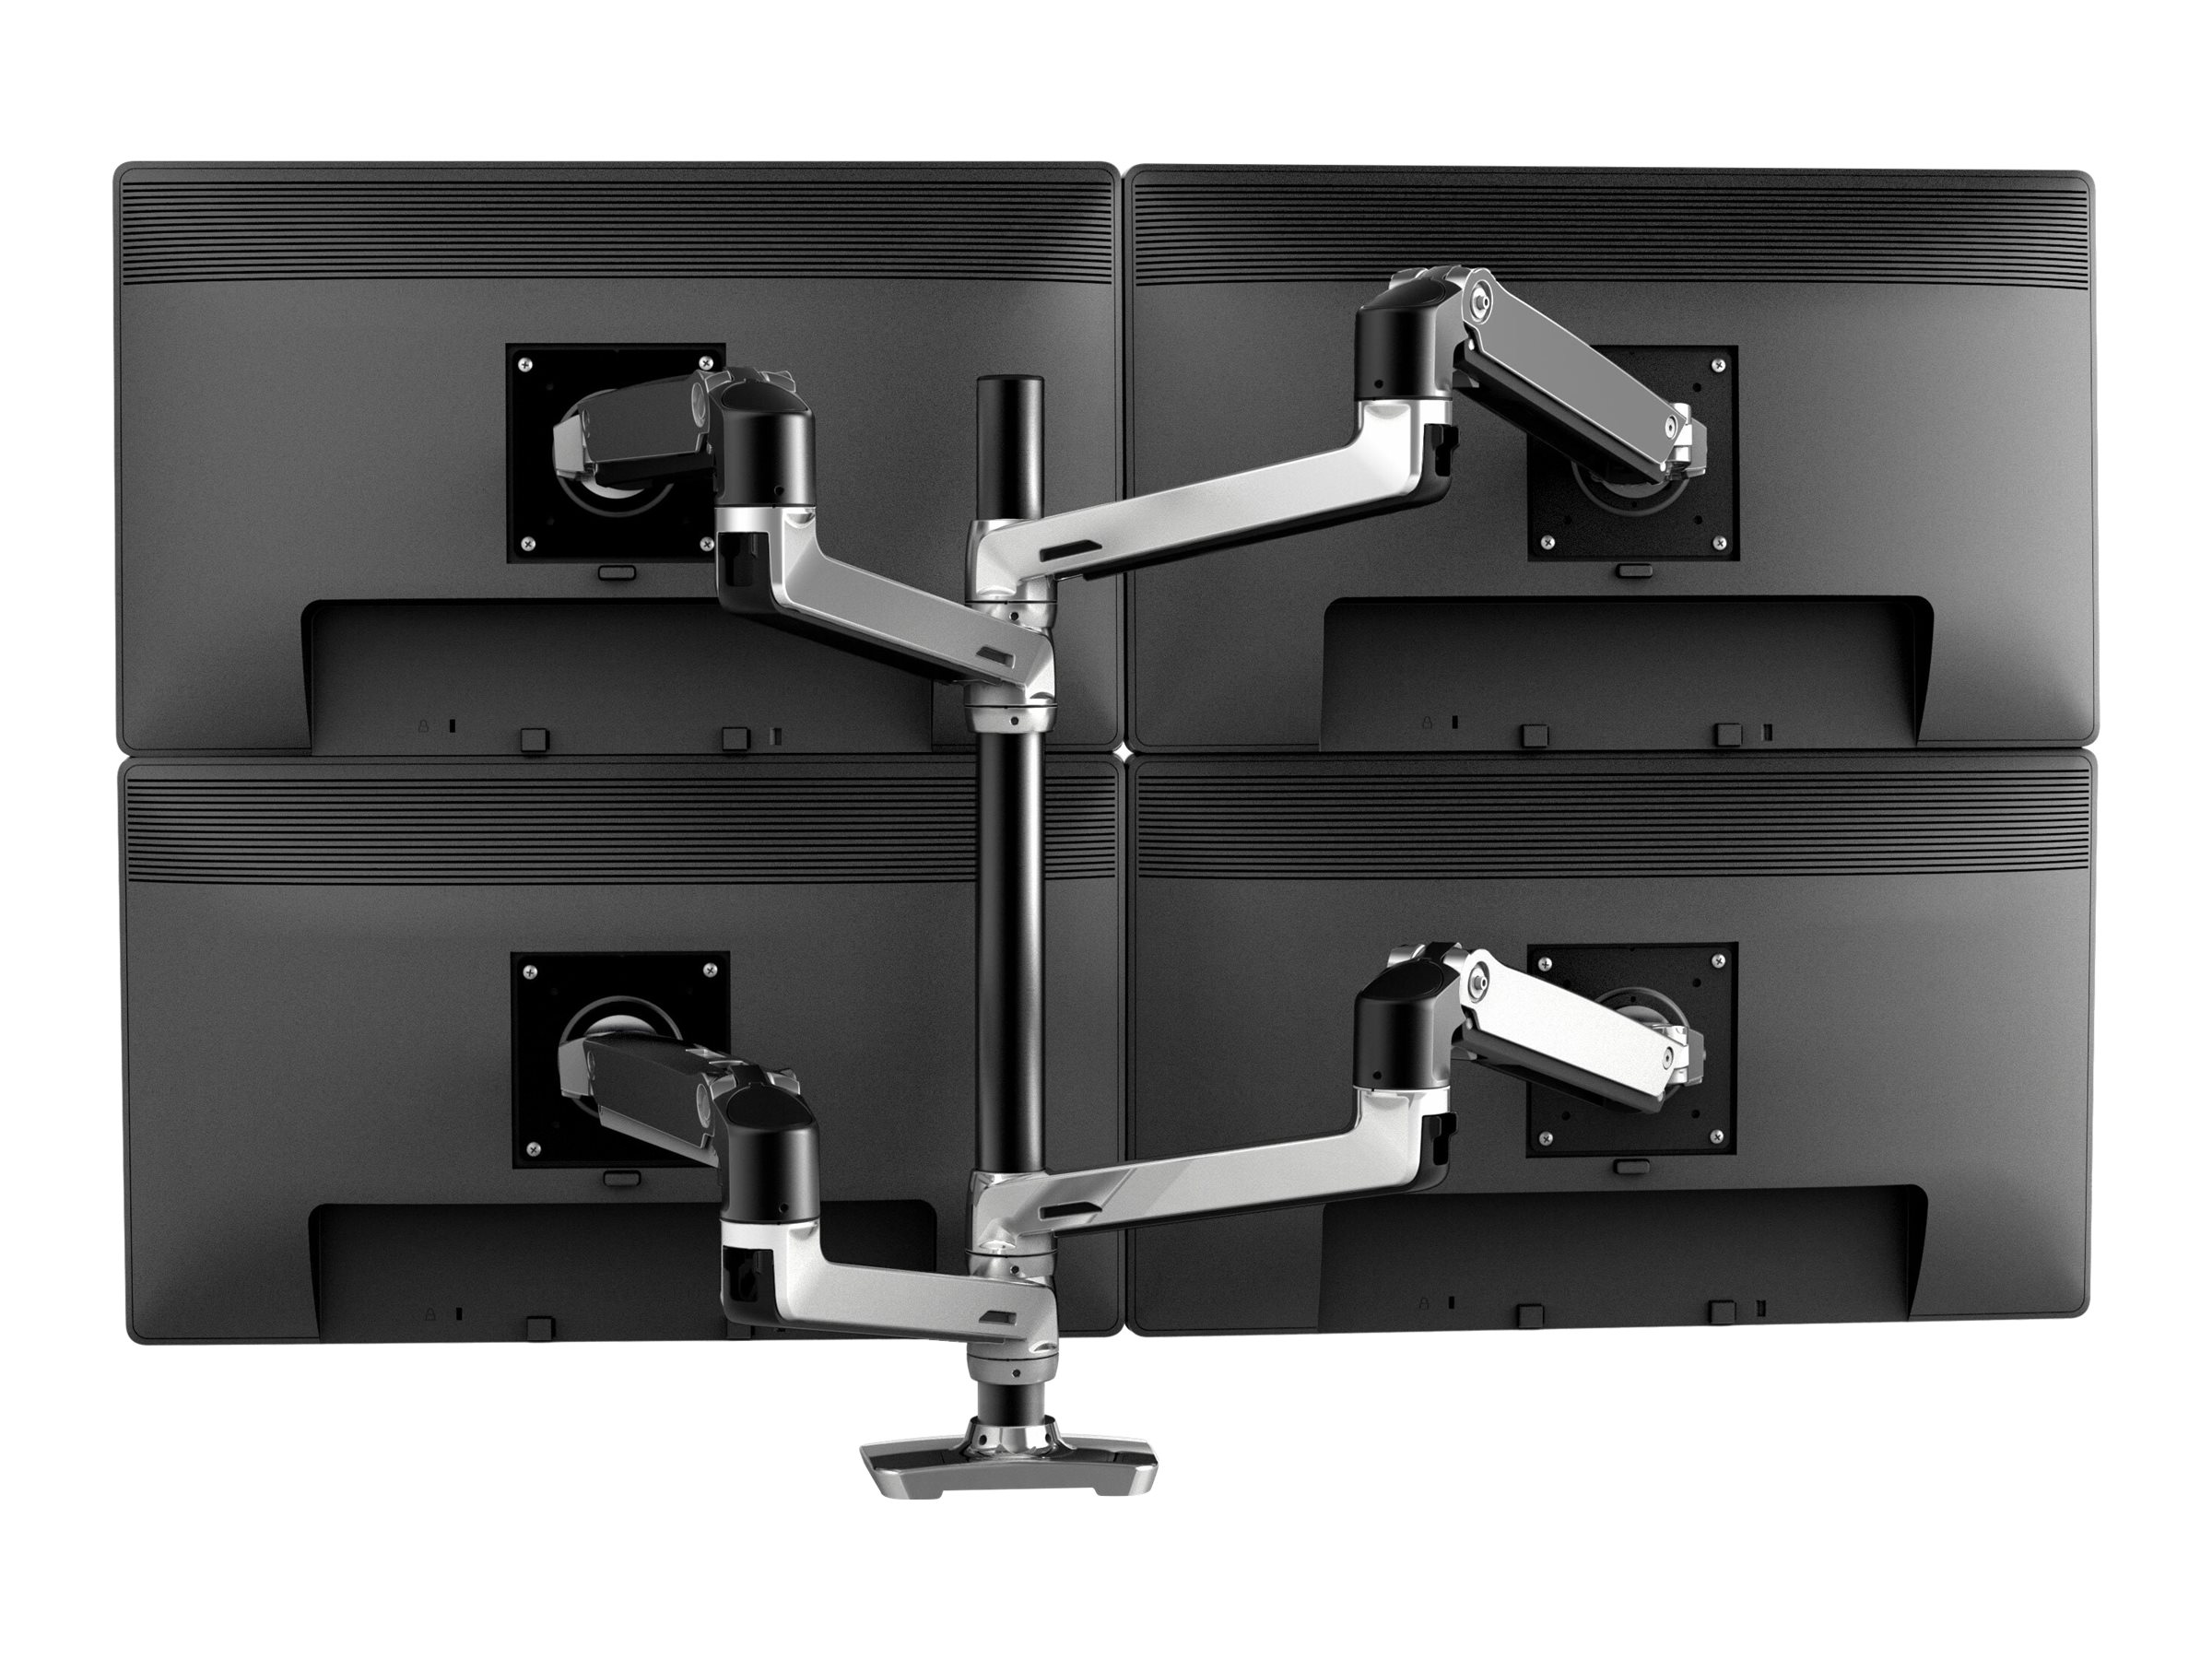 Ergotron LX - Kit de montage (poteau haut, bras d'empilage double) - pour 2 écrans LCD - aluminium, acier - aluminium poli avec des accents noirs - Taille d'écran : jusqu'à 40 pouces - 45-549-026 - Montages pour TV et moniteur